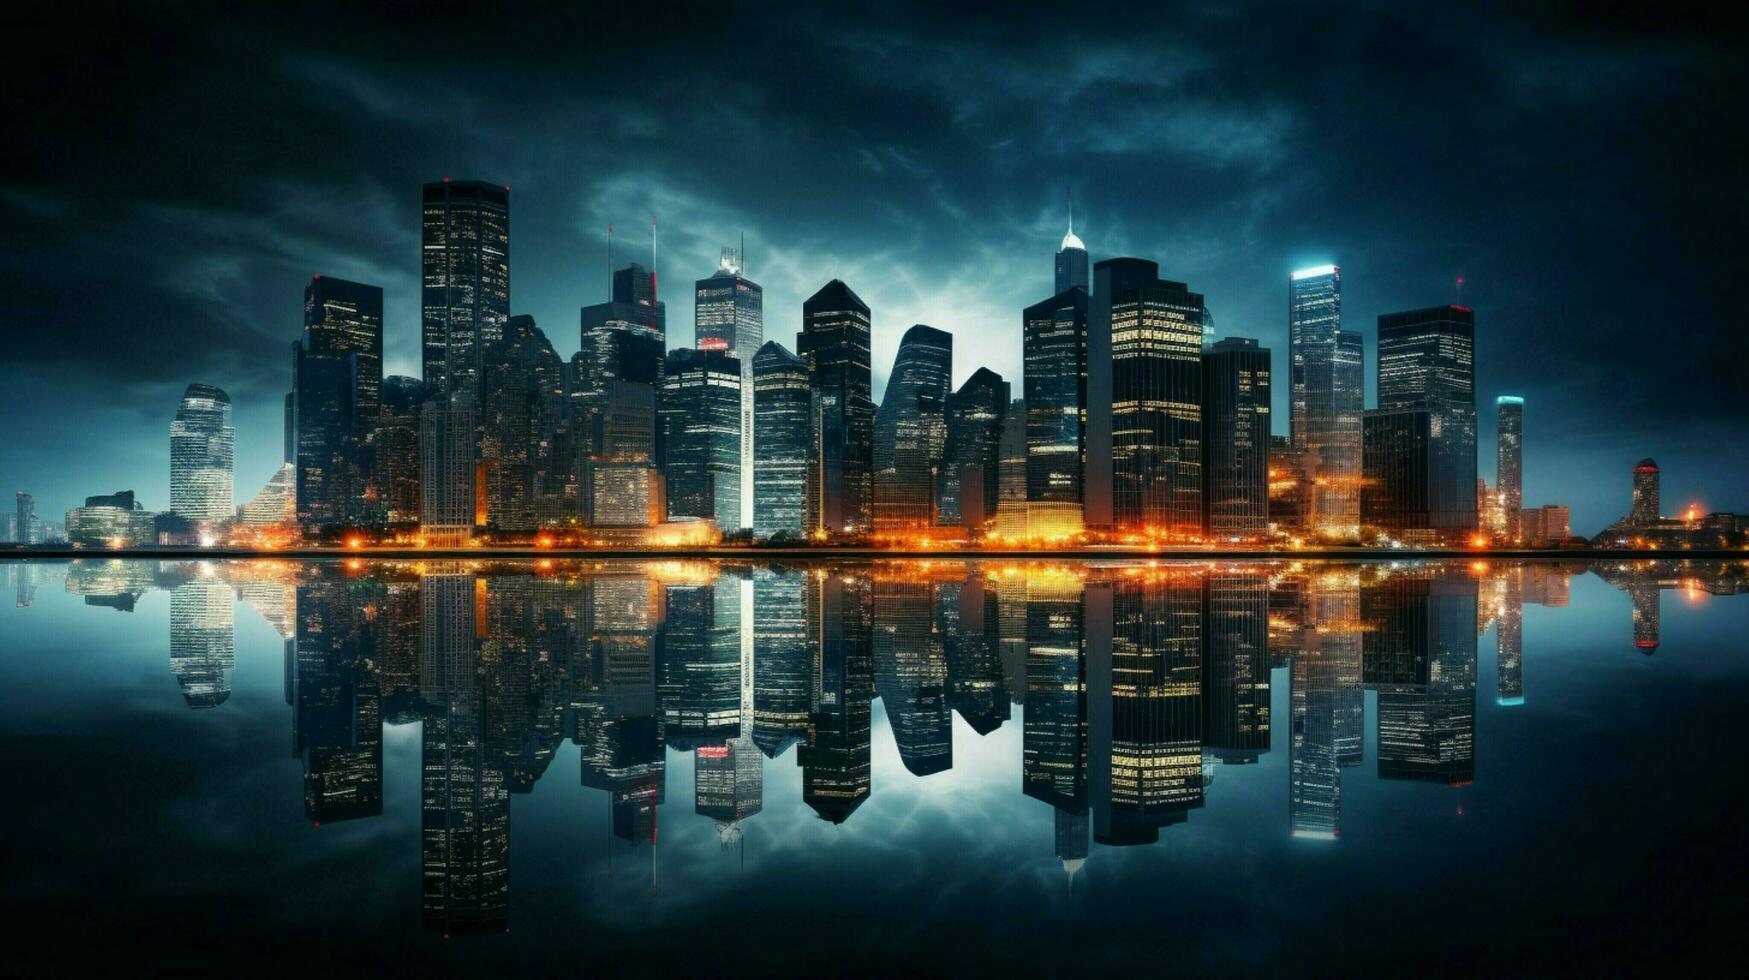 nacht stadsgezicht met wolkenkrabbers water reflectie en boog foto